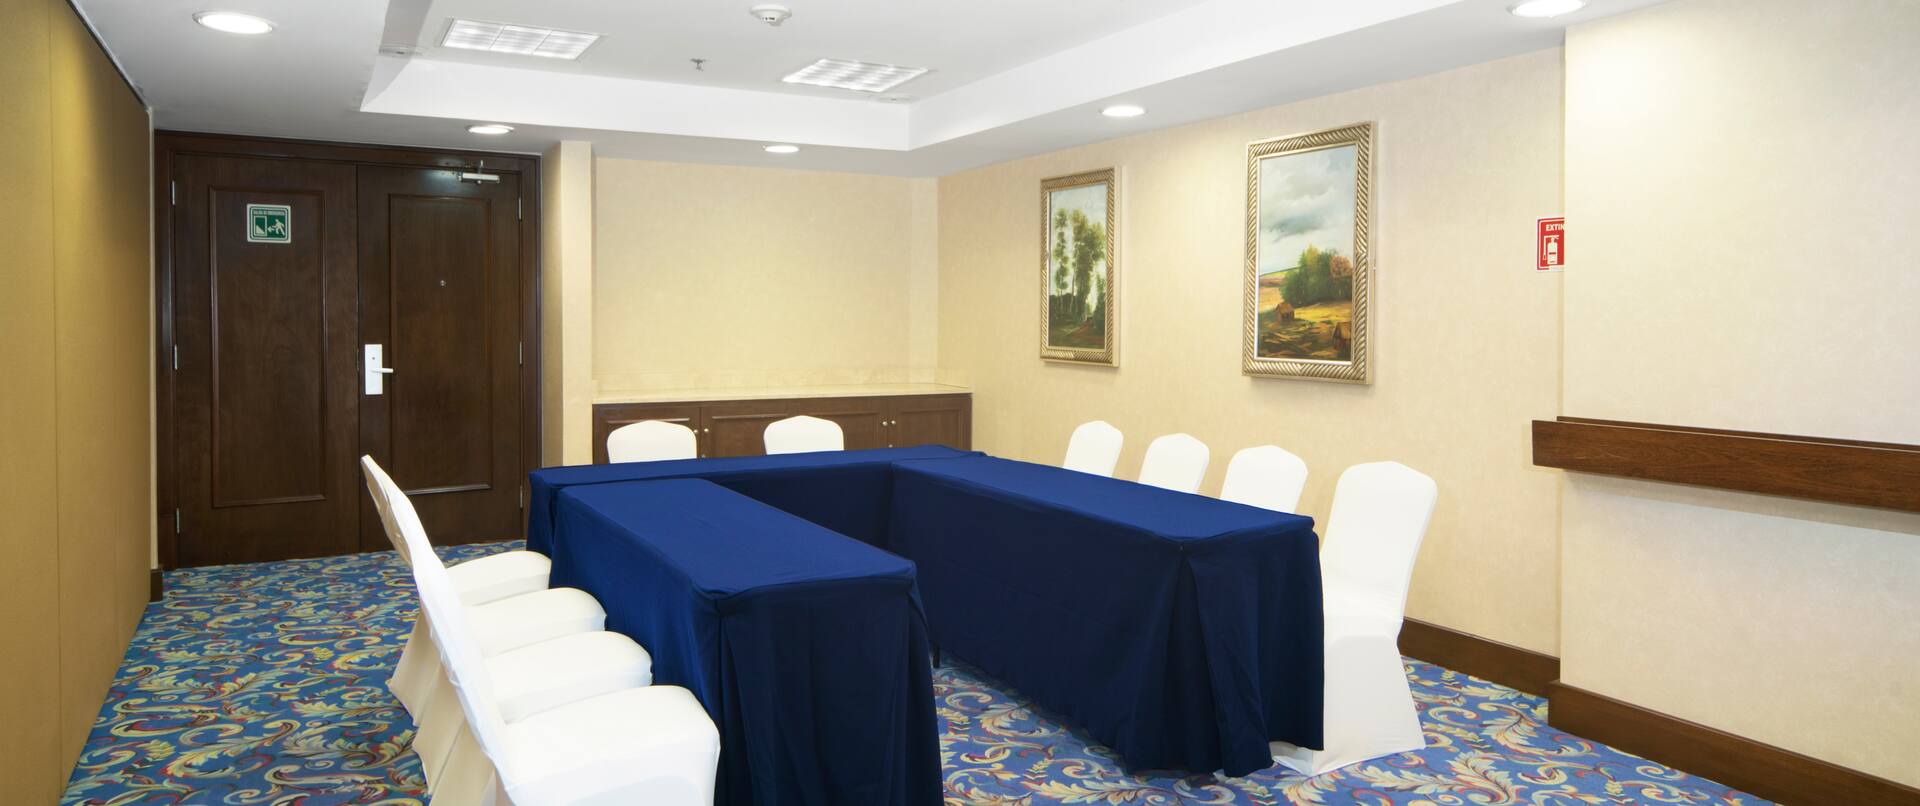 Sala de reuniones con montaje de mesas en forma de U